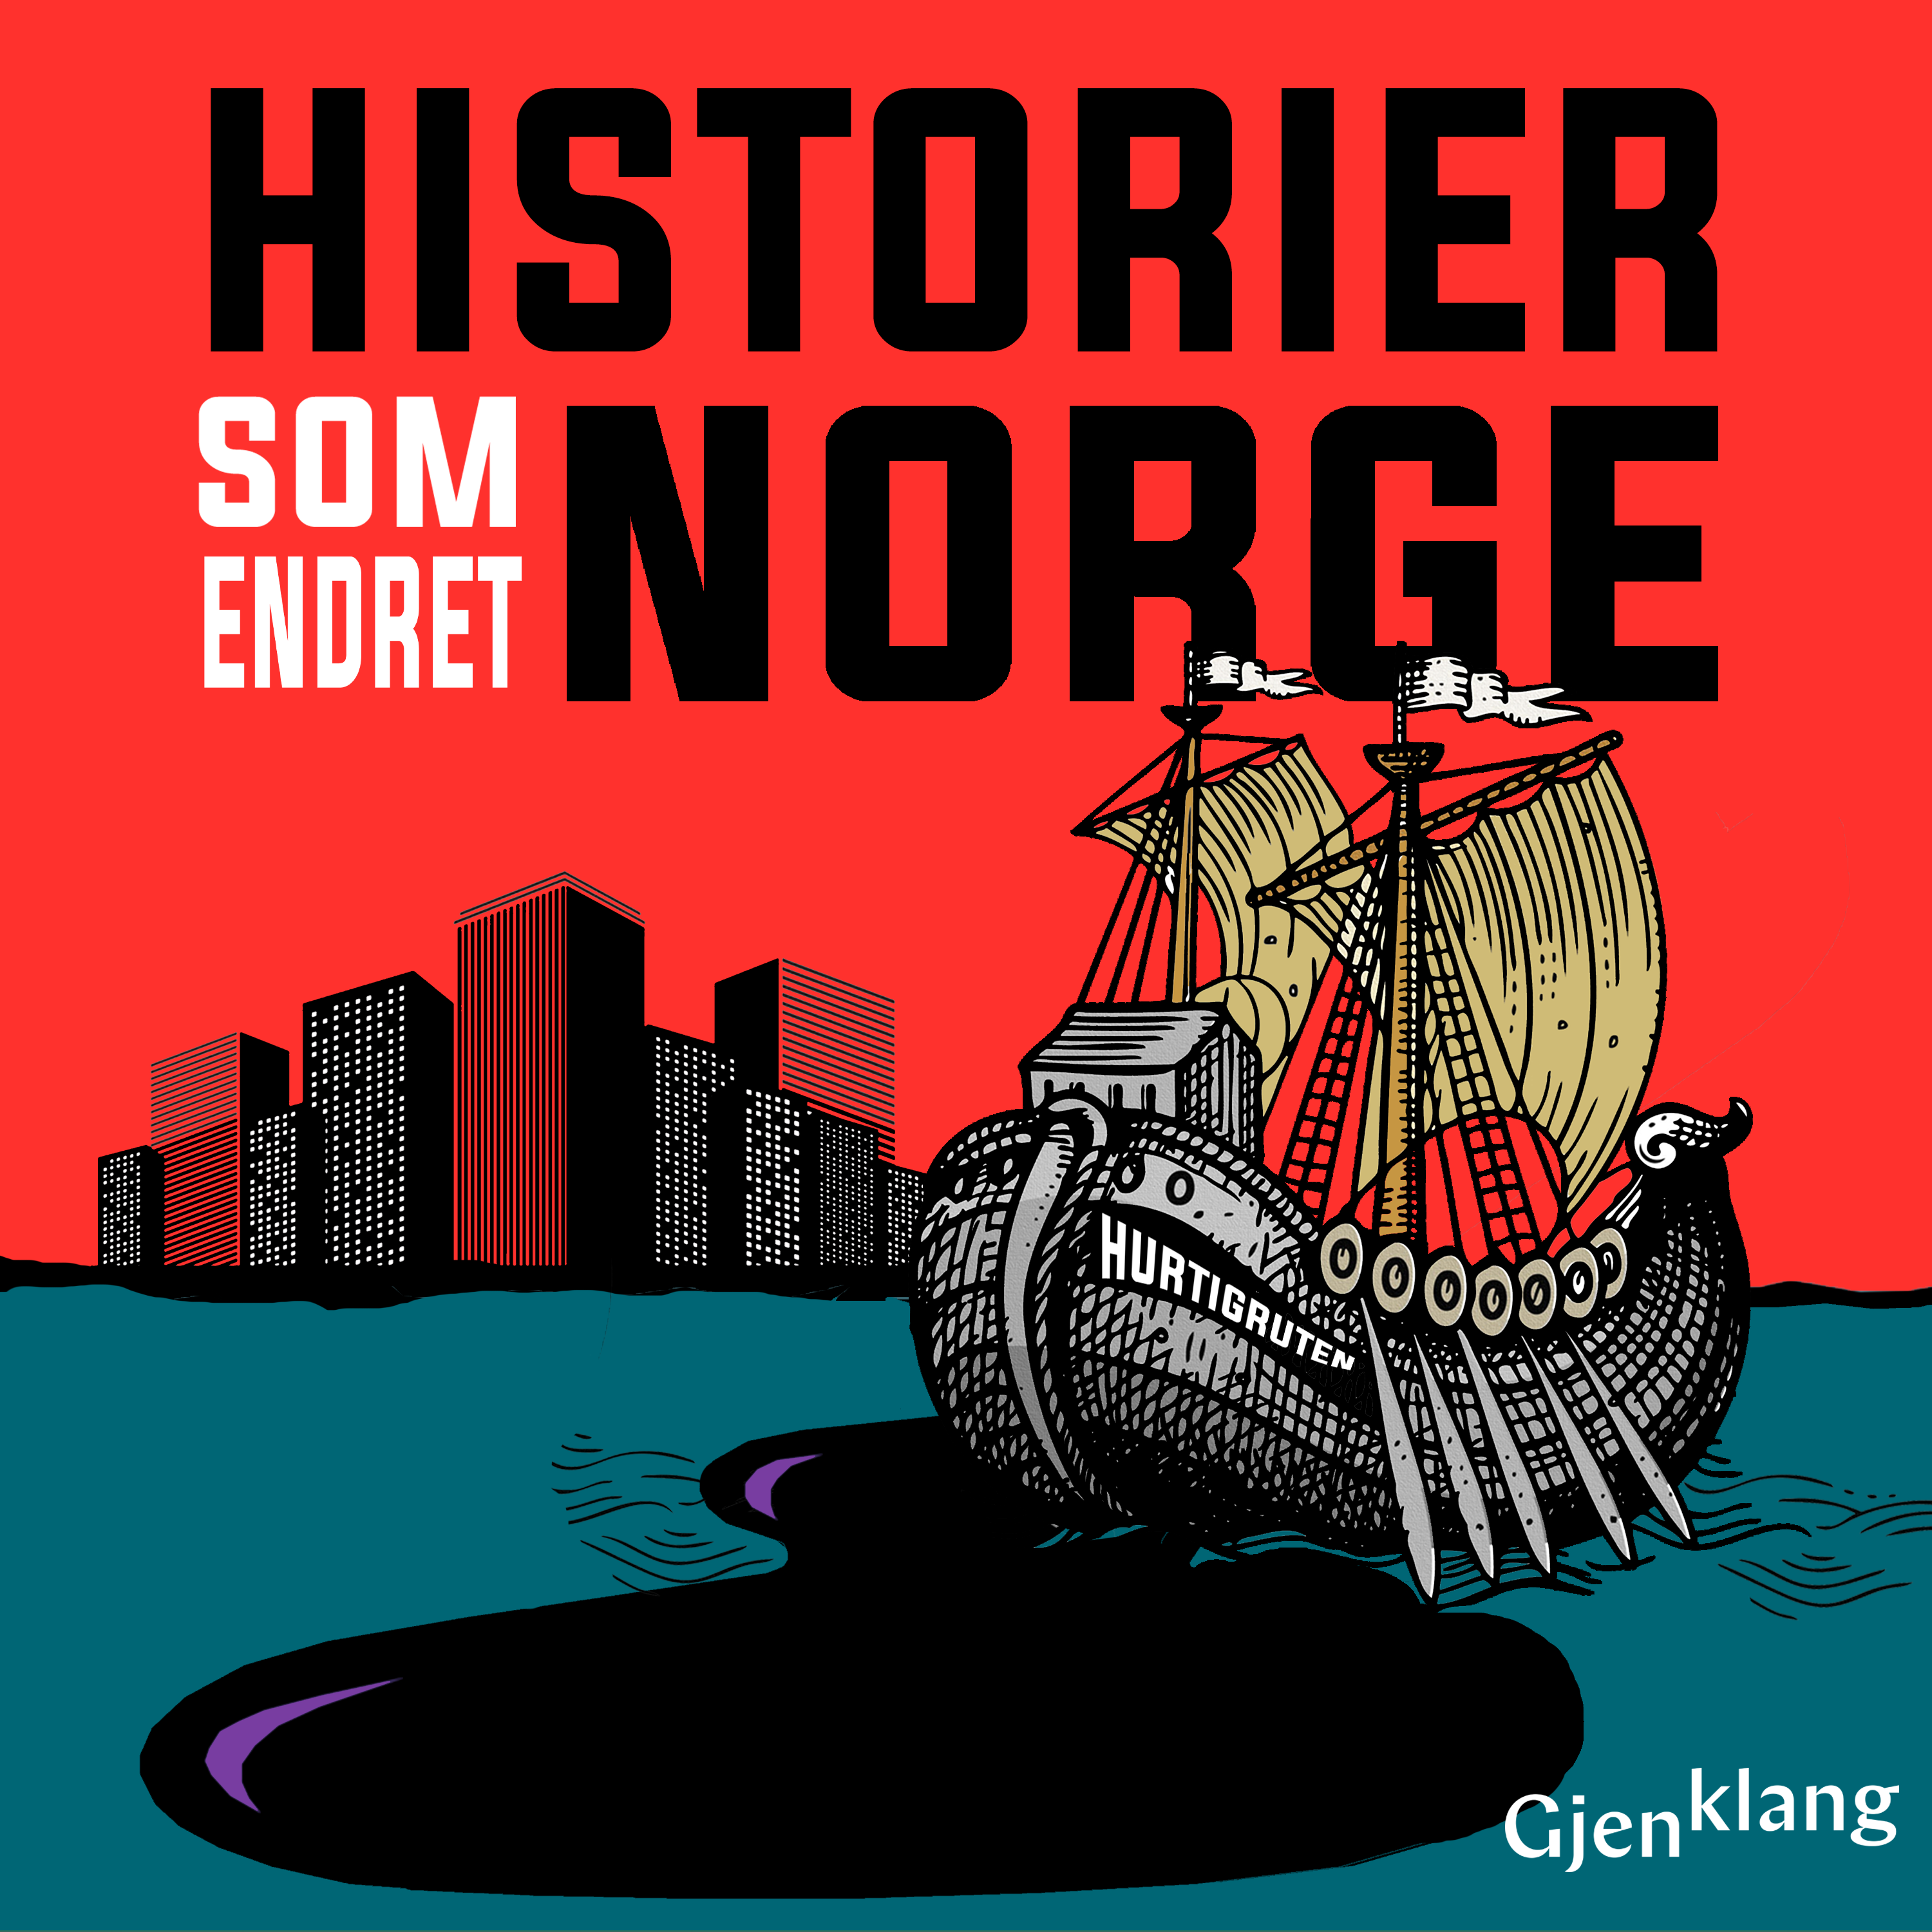 Historier Som Endret Norge:Gjenklang